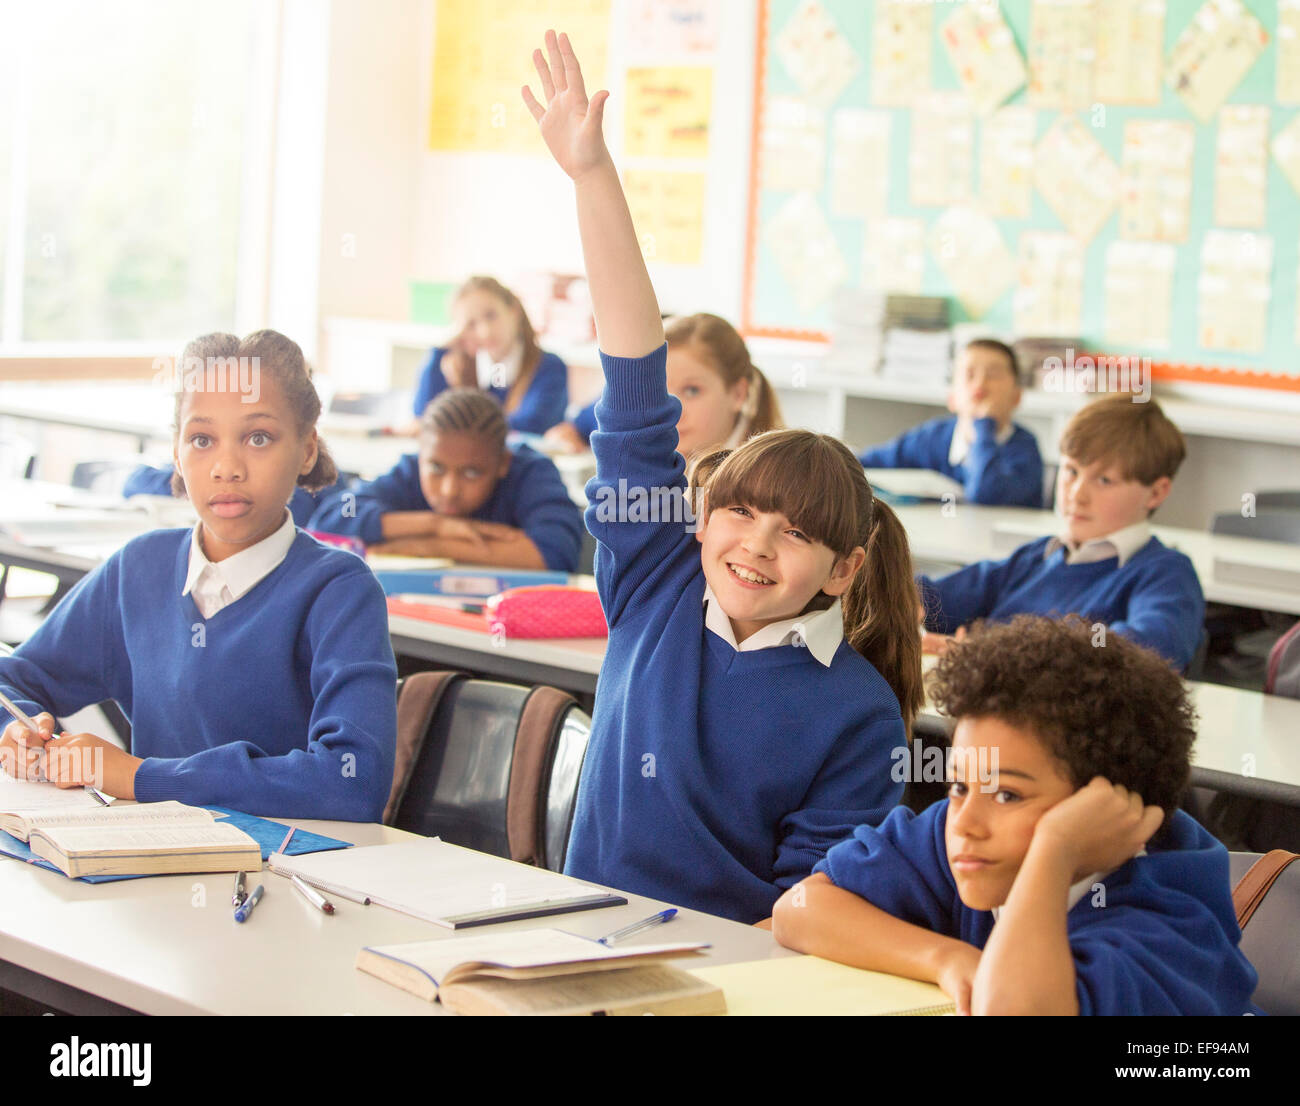 Grundschulkinder im Klassenzimmer während der Lektion, lächelndes Mädchen Hand heben Stockfoto